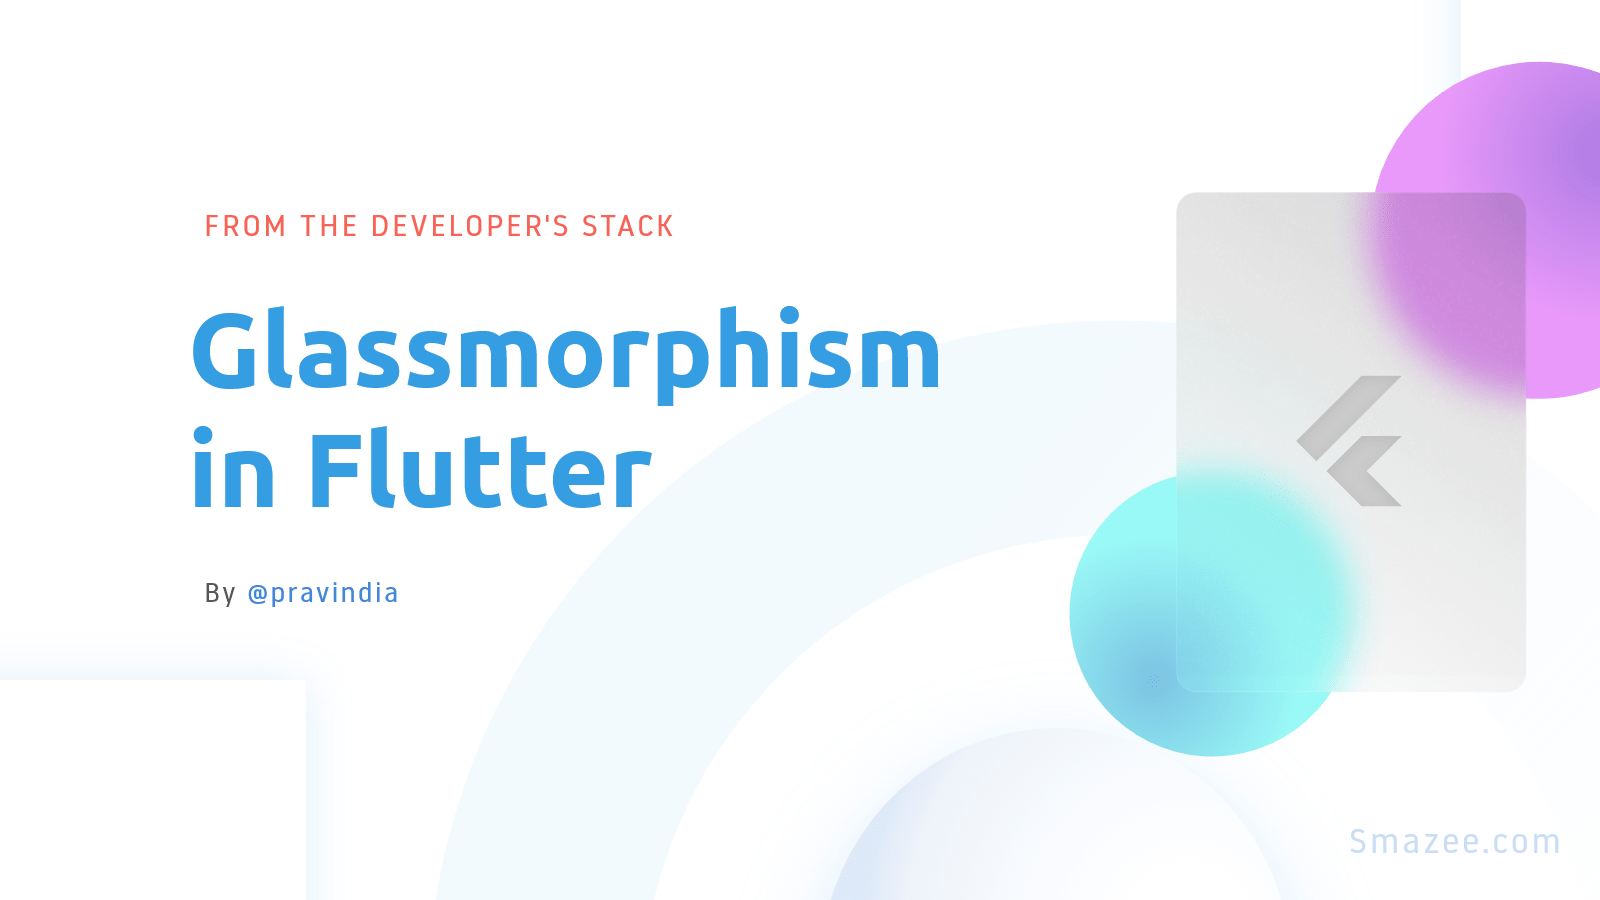 Thêm sự chuyên nghiệp và thu hút vào ứng dụng Flutter của bạn bằng cách áp dụng Glassmorphism - một xu hướng thiết kế đang được ưa chuộng. Những thông tin được hiển thị trên nền nhòa sẽ giúp tạo cảm giác mềm mại và dễ chịu, giúp người dùng dễ dàng tương tác với ứng dụng. Hãy xem hình ảnh để biết làm thế nào để thiết kế ứng dụng Flutter của bạn theo xu hướng Glassmorphism. 